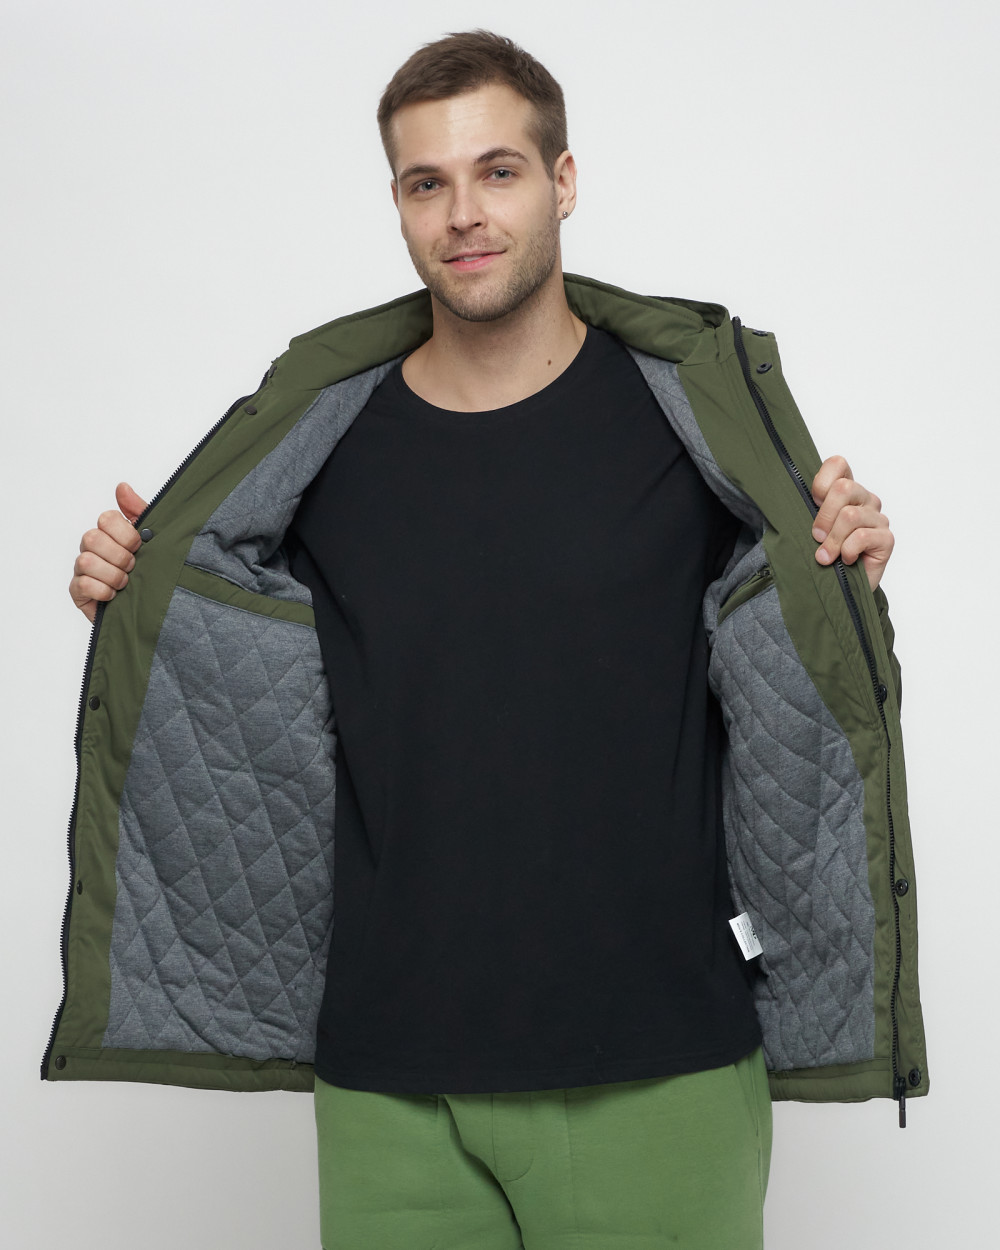 Купить куртку мужскую спортивную весеннюю оптом от производителя недорого в Москве 8599Kh 1